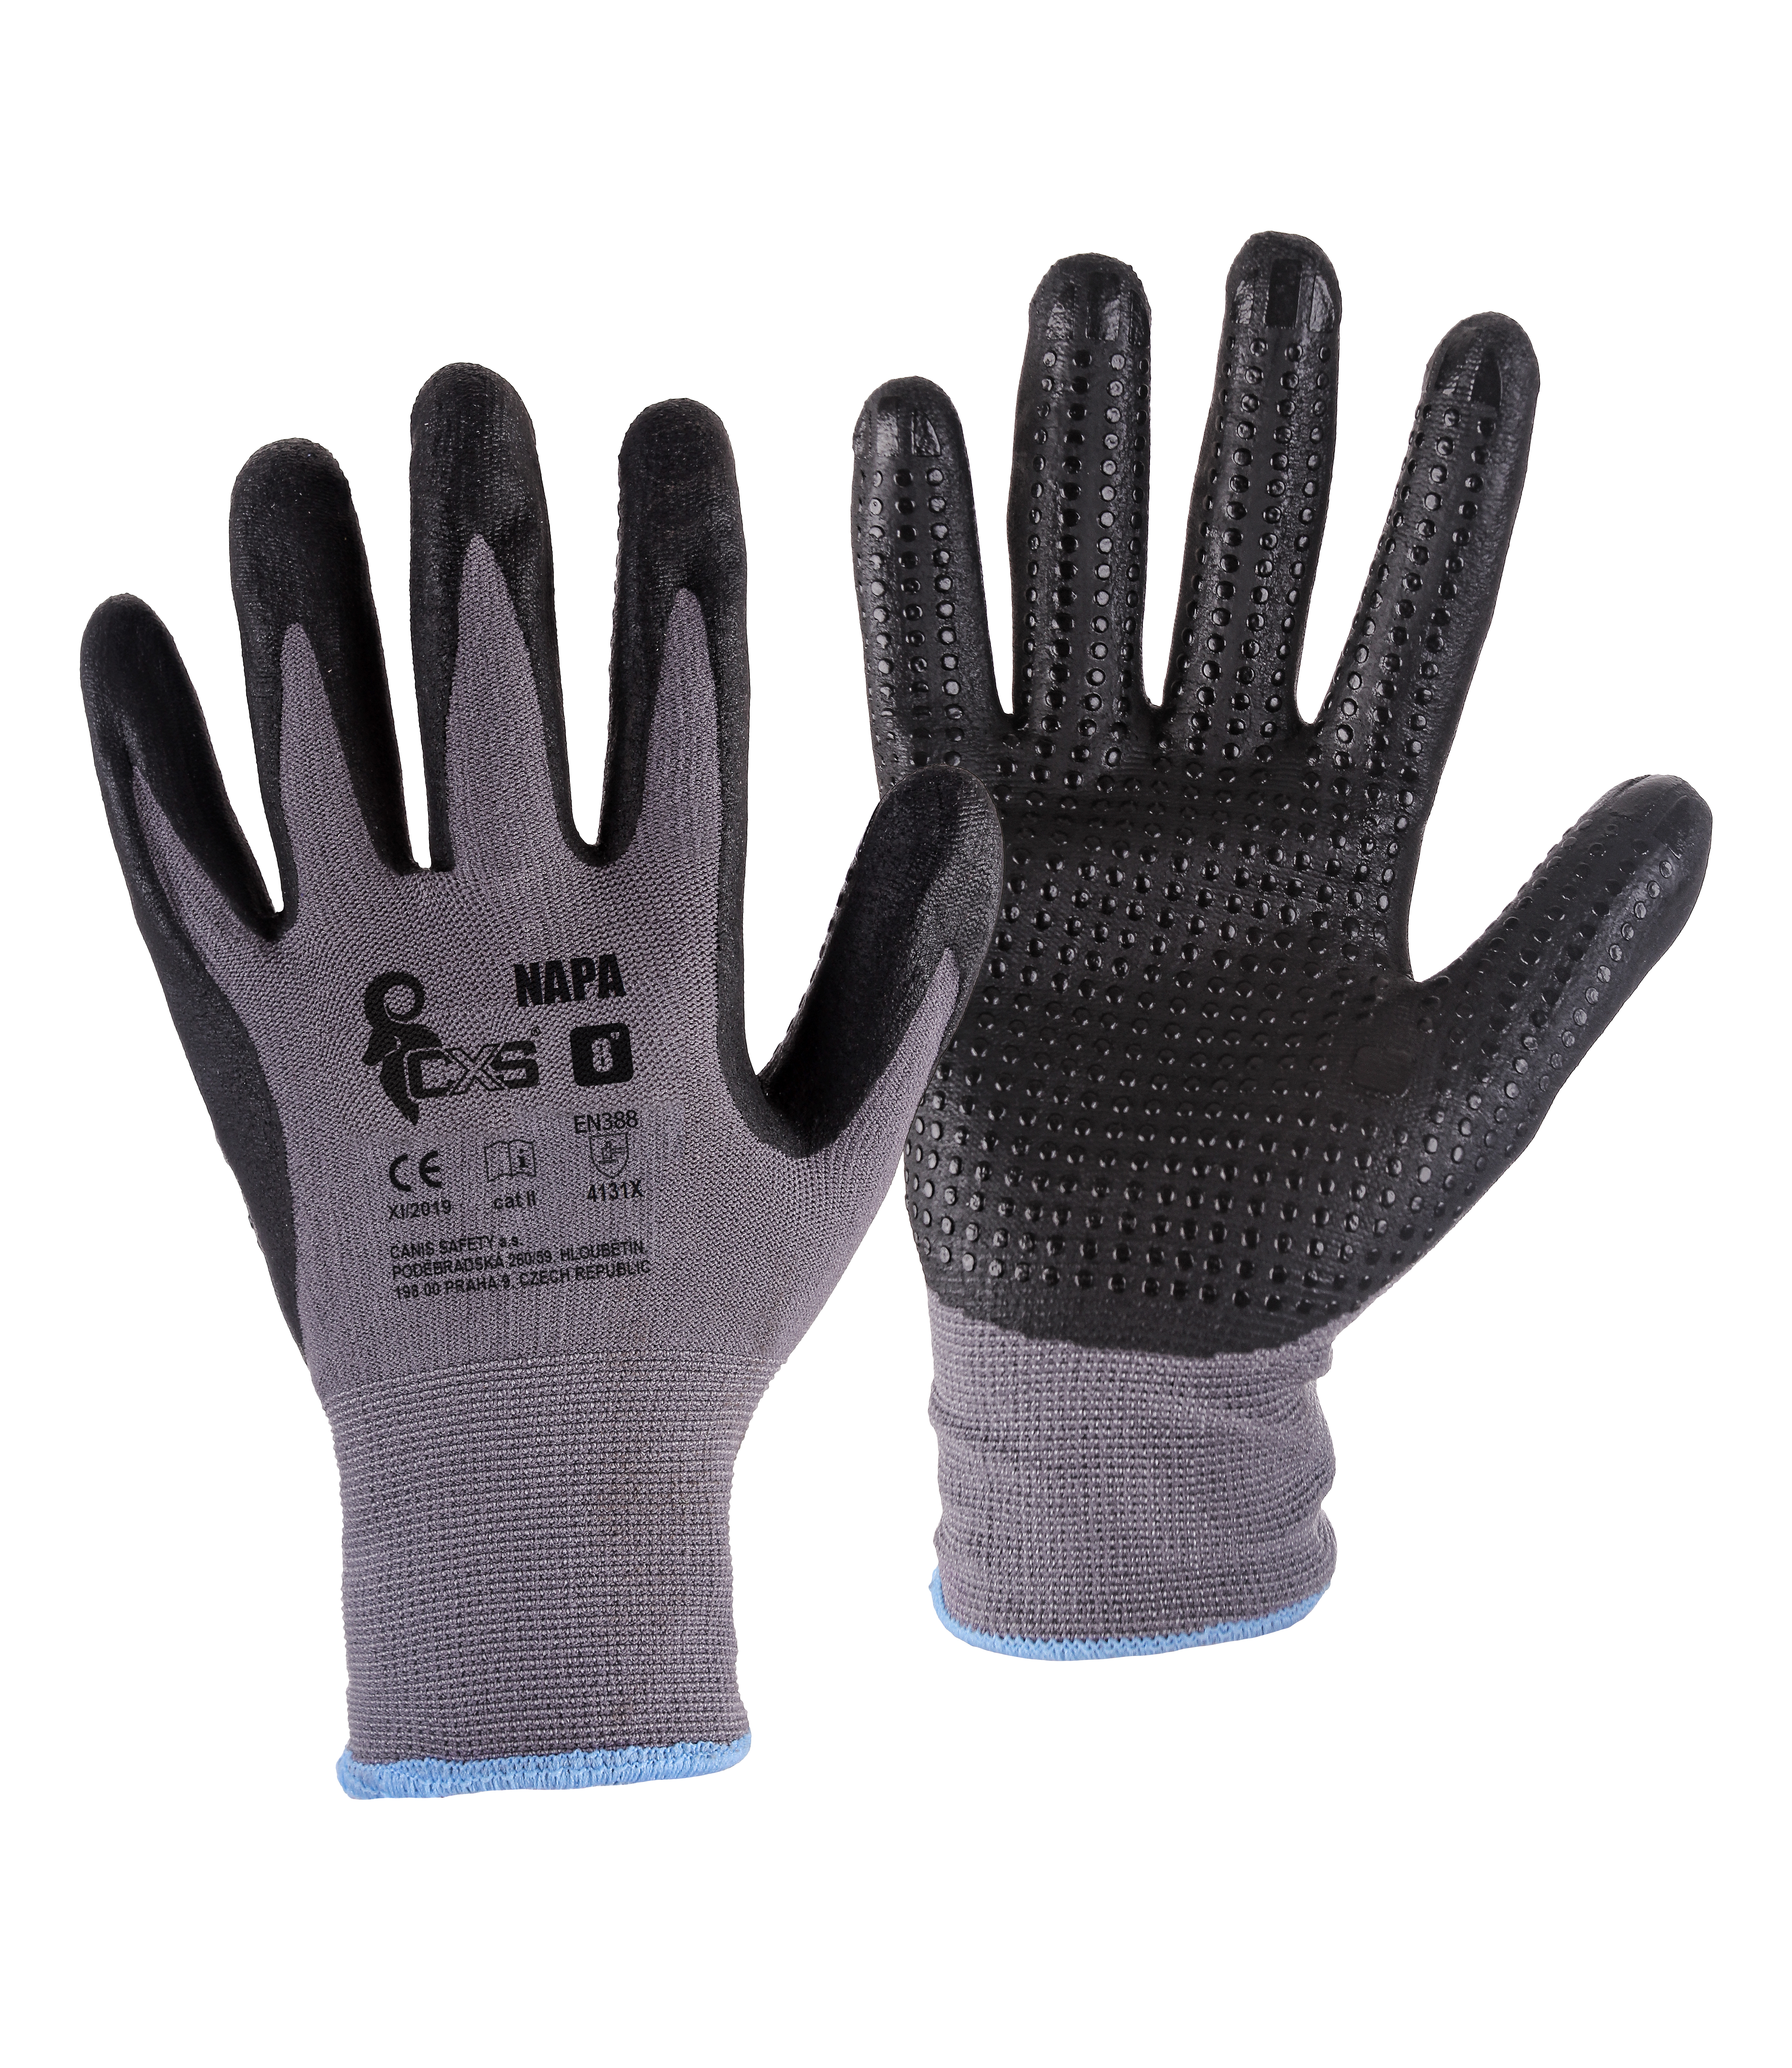 rukavice NAPA, s úpletem, šedo - černé, velikost 10 0.05 Kg TOP Sklad4 606037 40